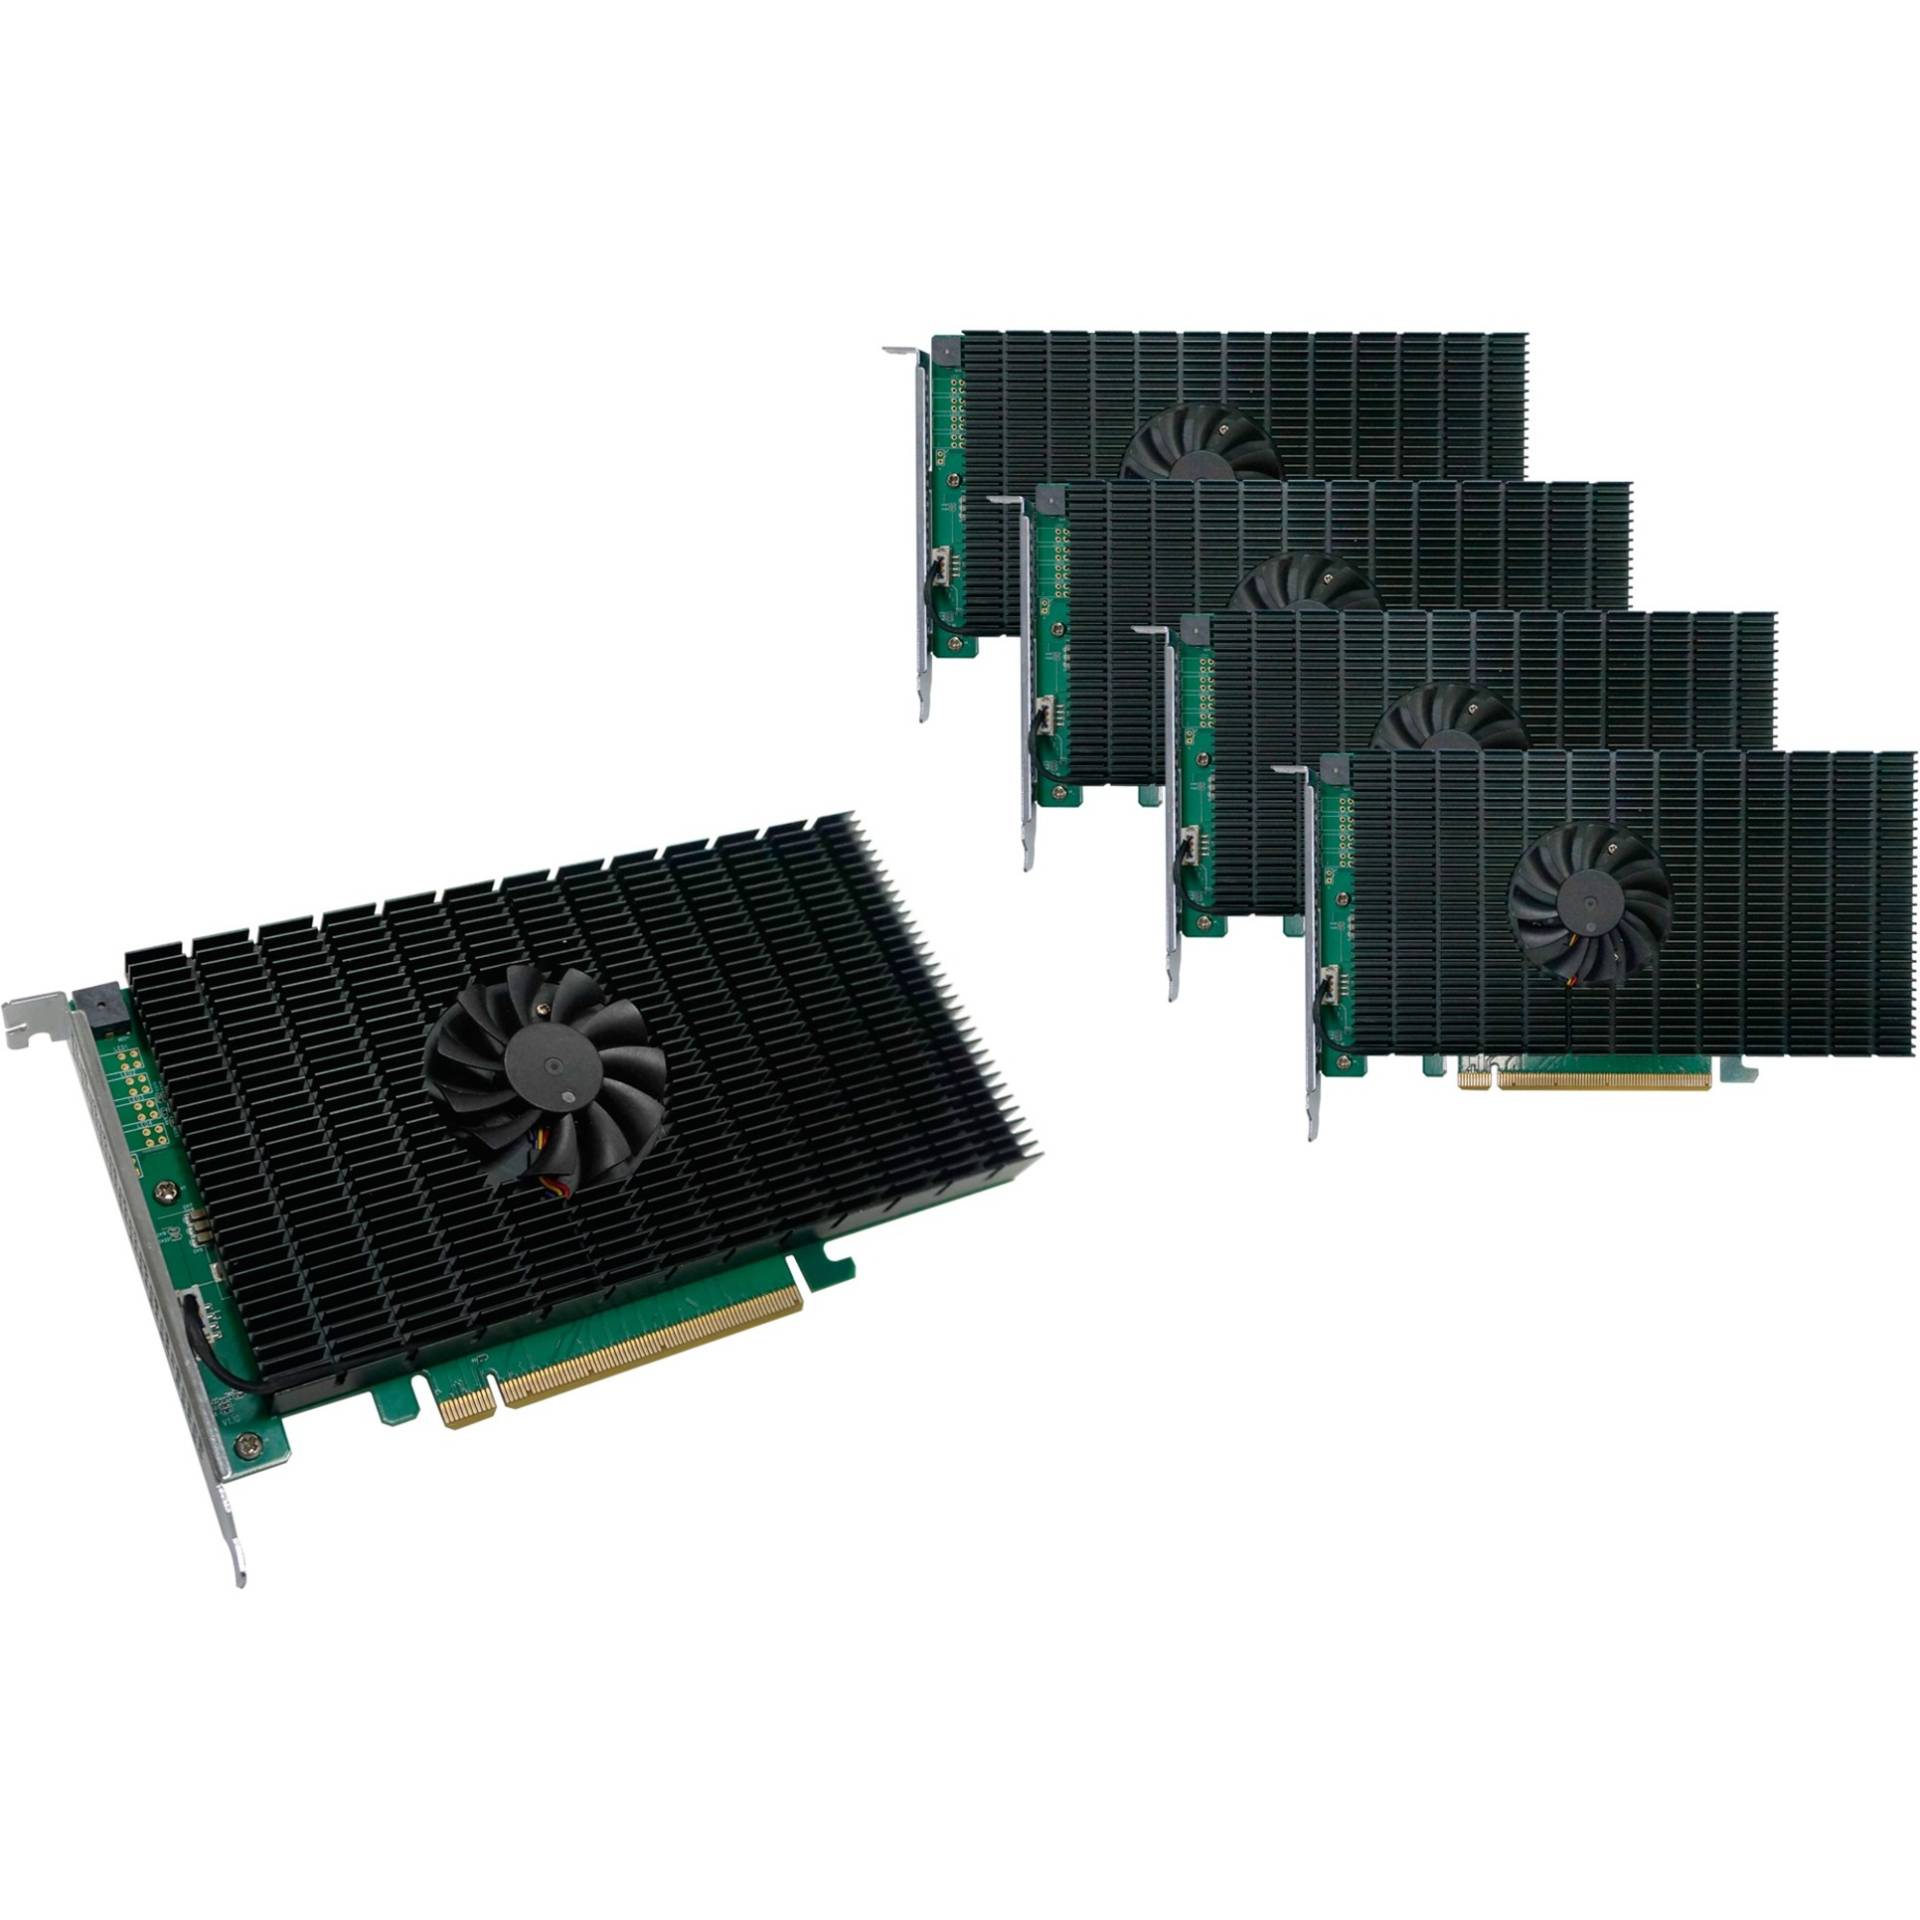 SSD7505-5Pack, RAID-Karte von HighPoint